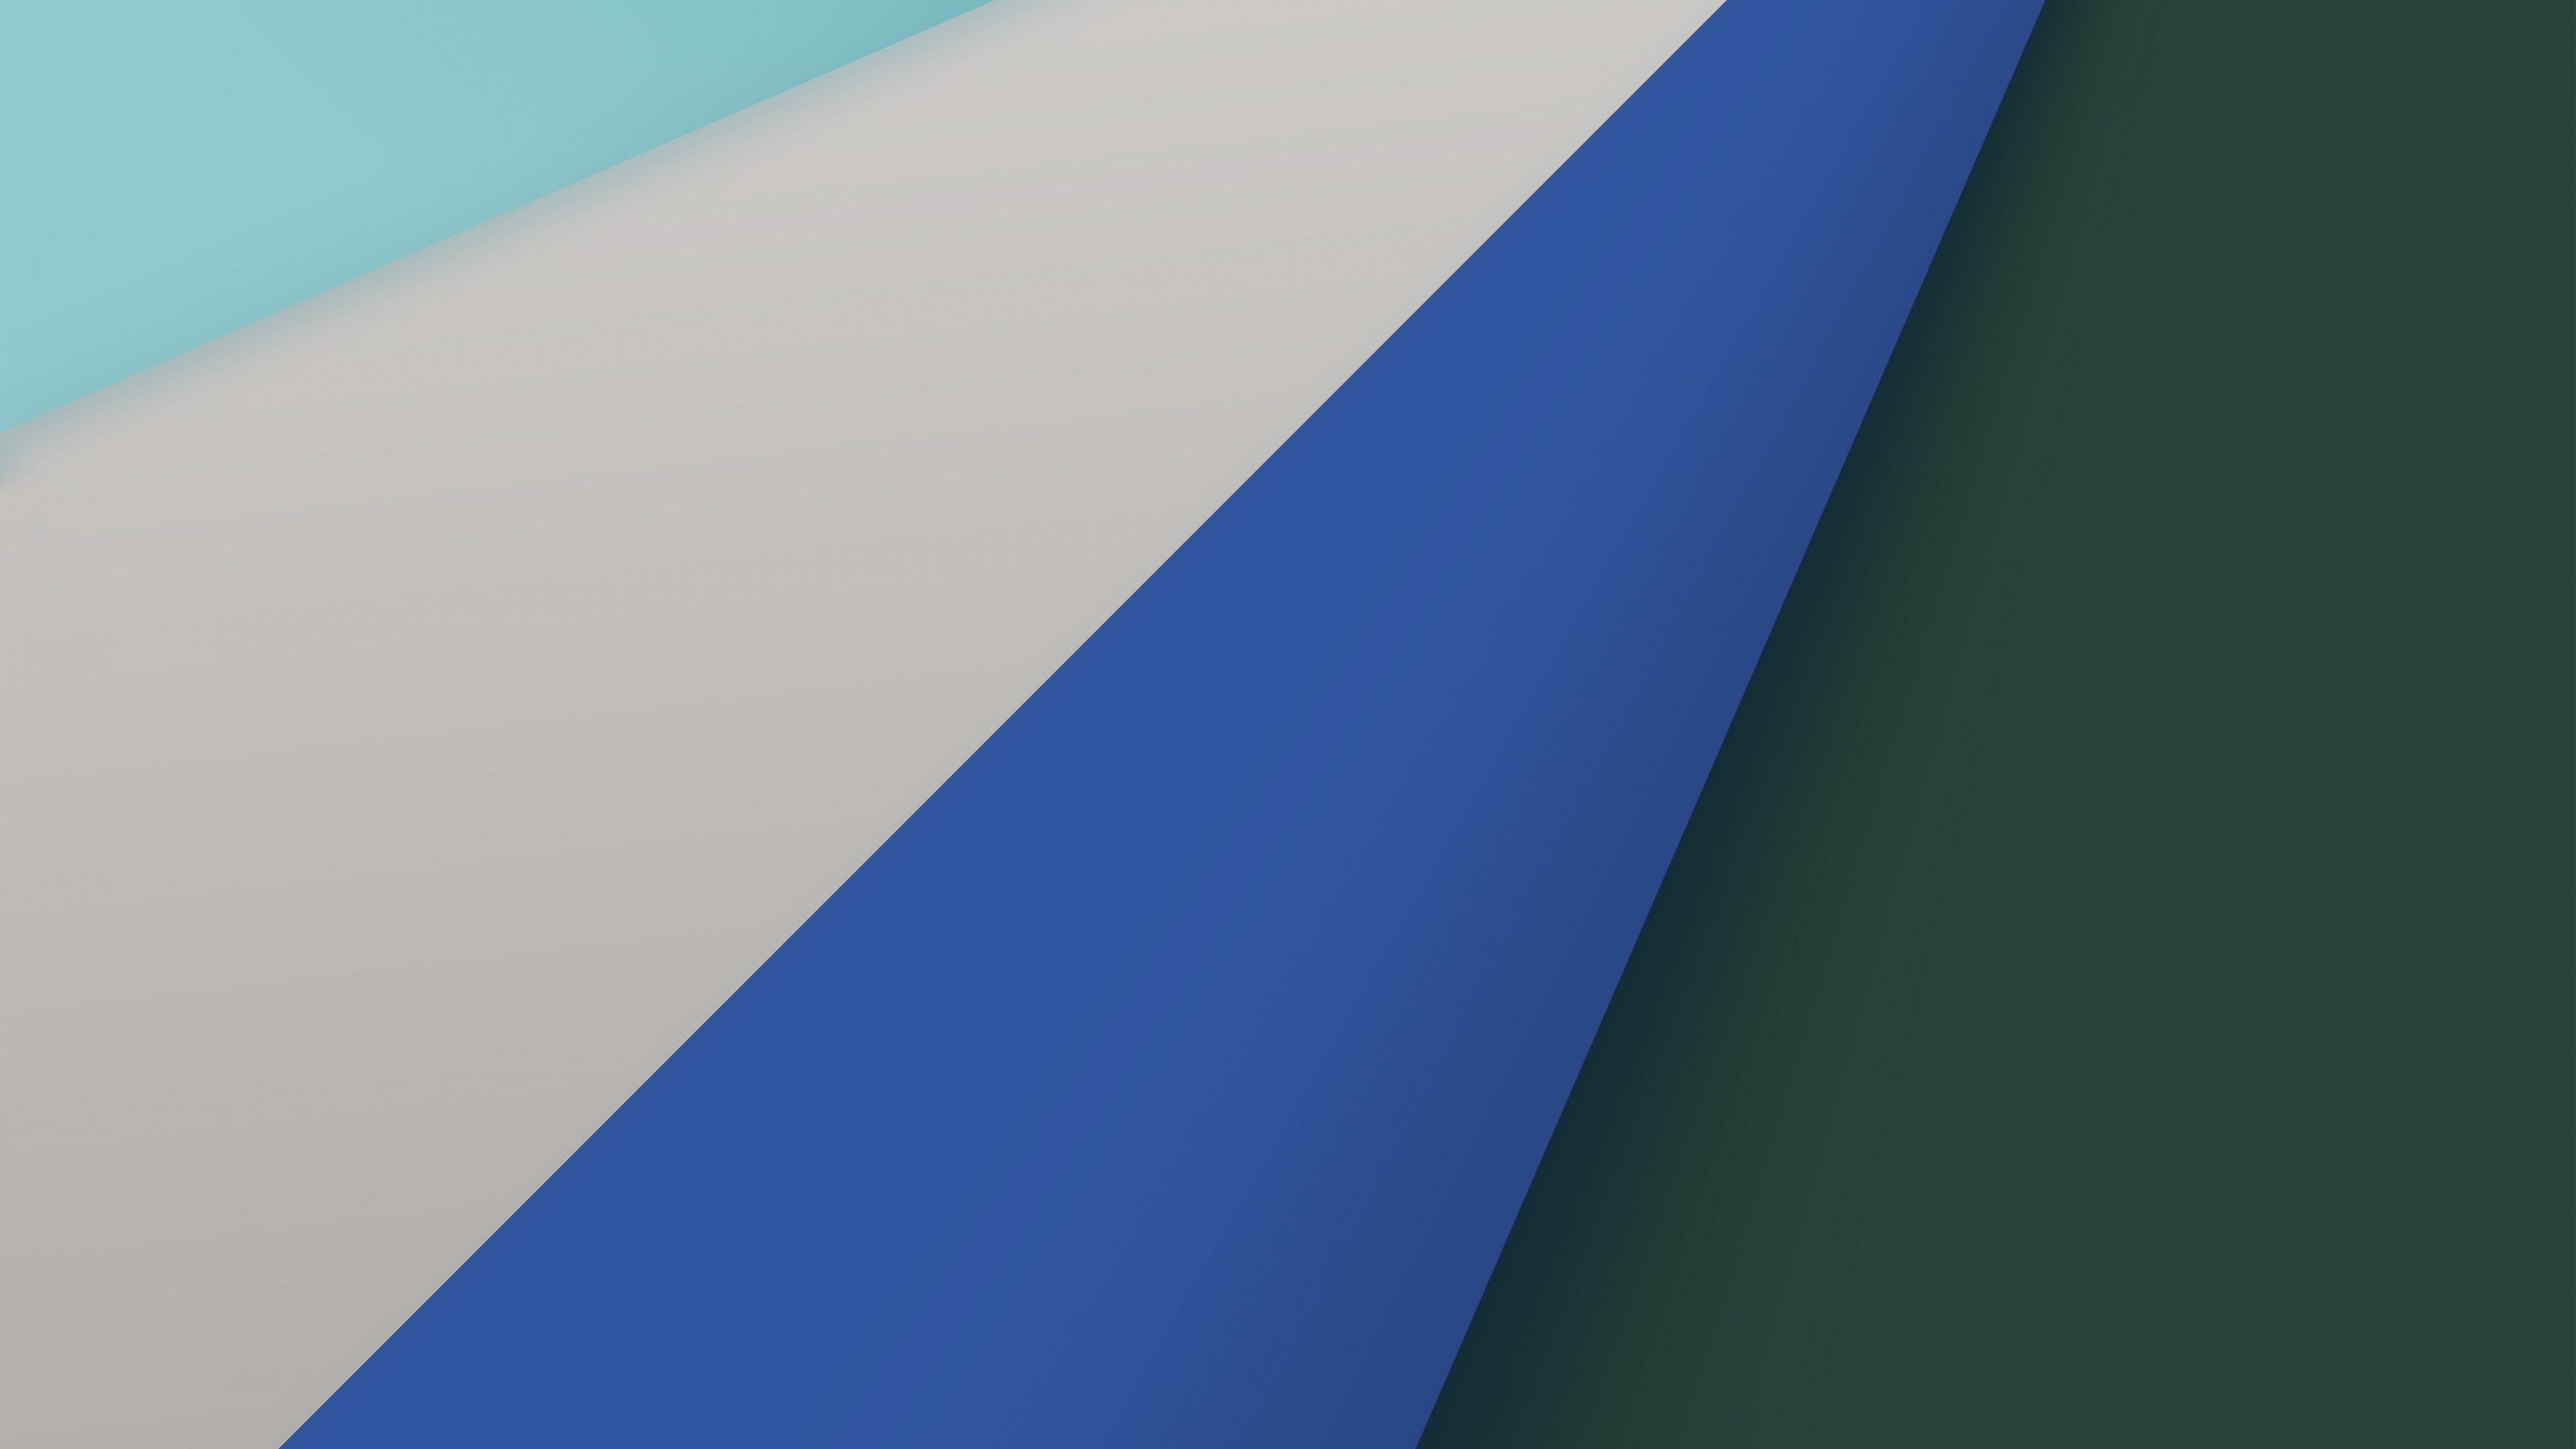 Wallpaper Safari, blue, macOS Big Sur, Apple October 2020 Event, 5K, OS